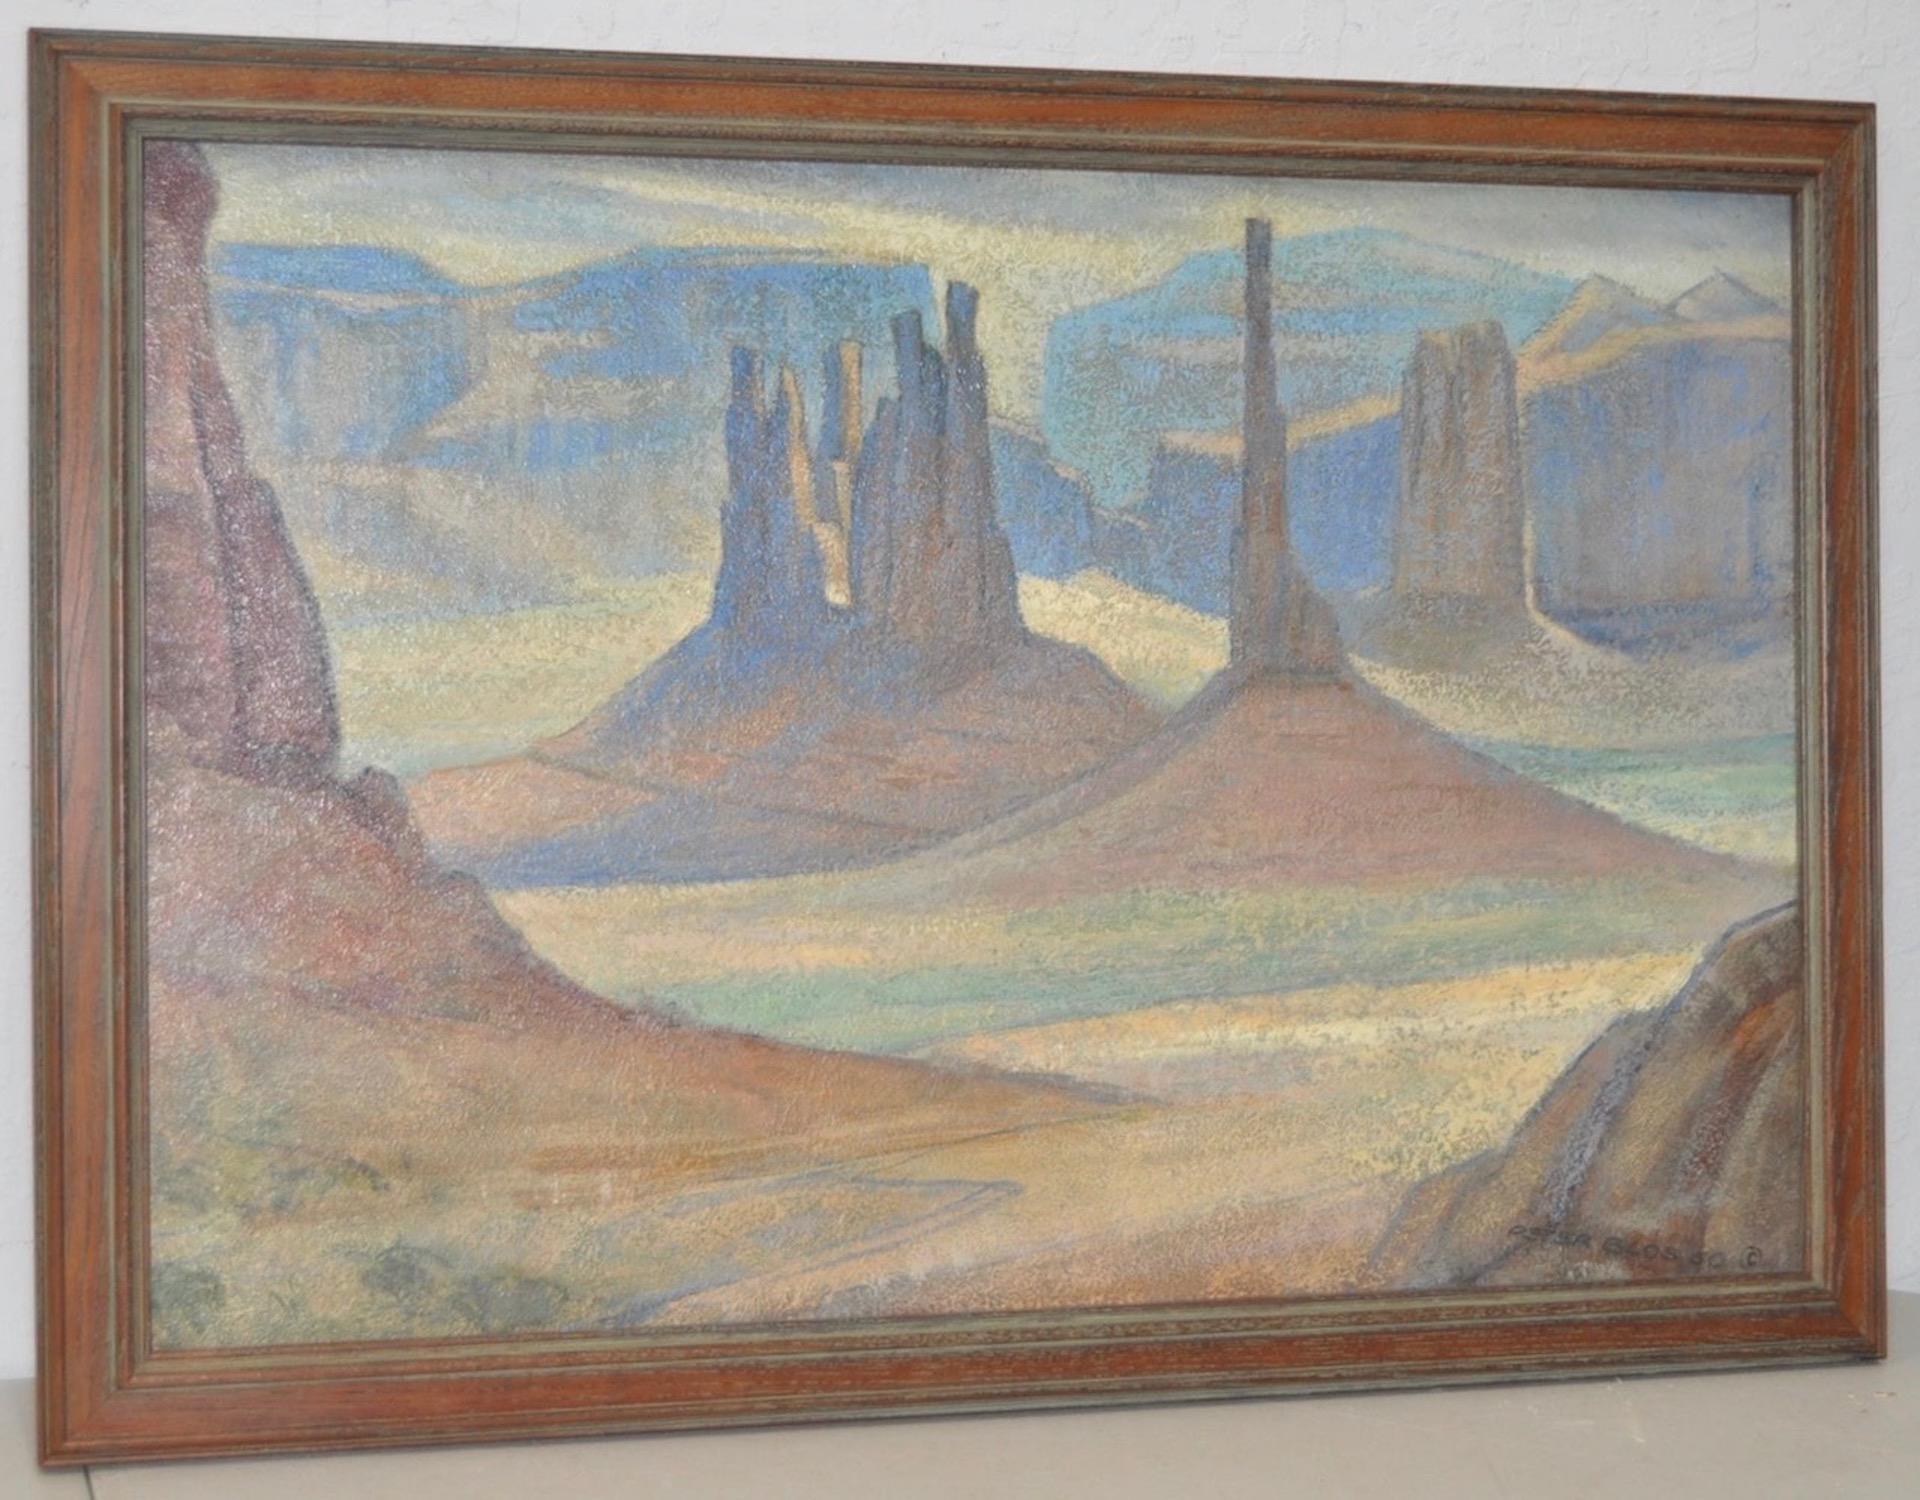 PETER BLOS Landscape Painting - Peter Blos "Monument Valley" Desert Landscape Oil Painting c.1950